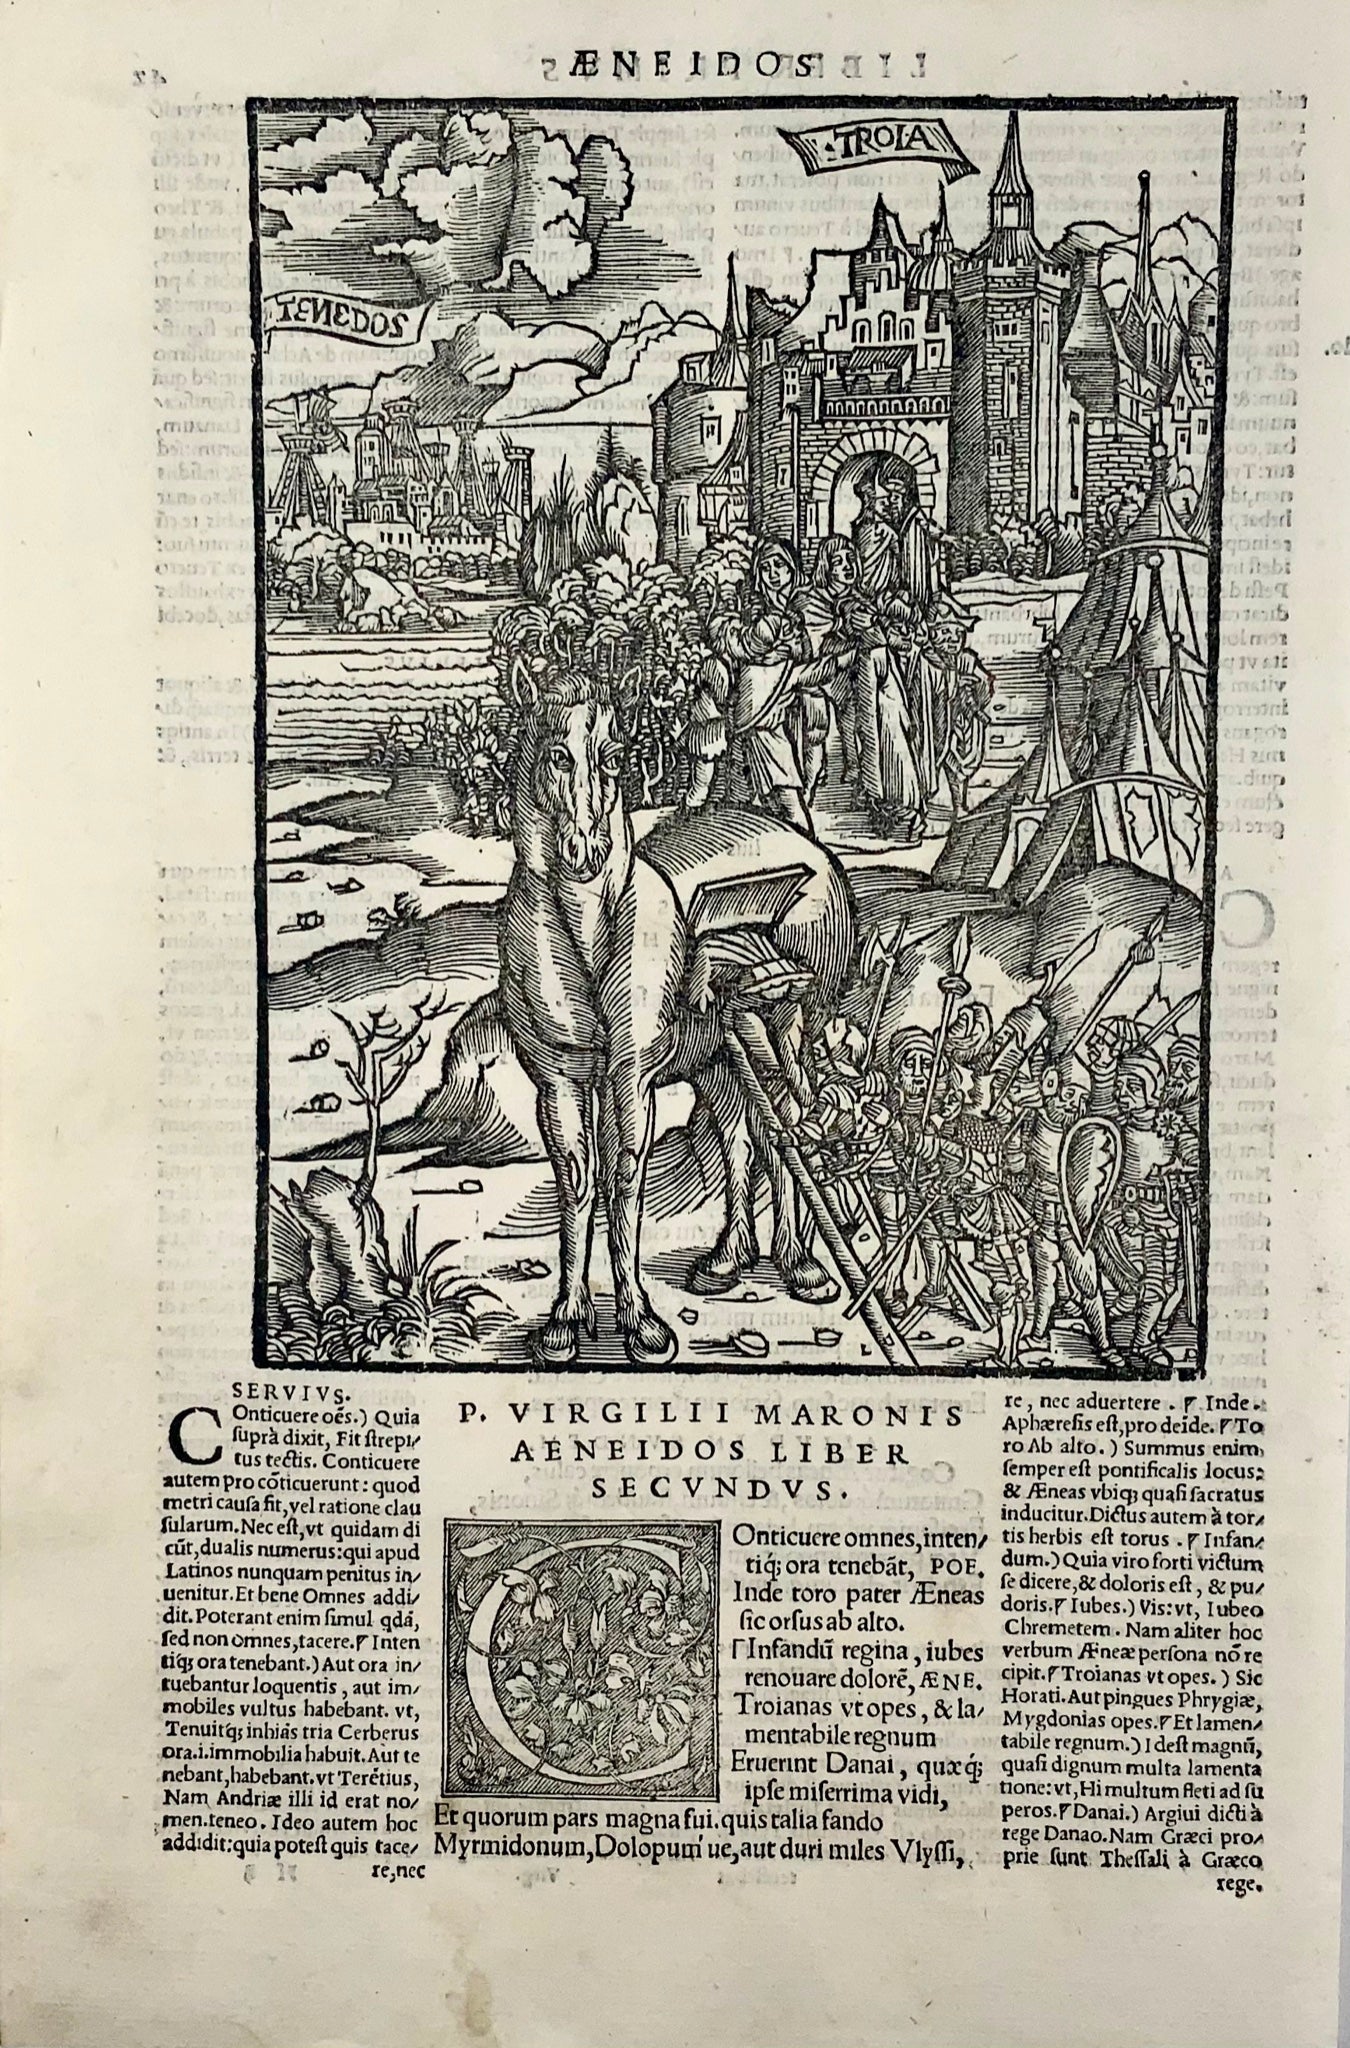 1517 Folio Gruninger woodcut leaf from Virgil’s Aeneid, Trojan Horse, mythology, master engraving